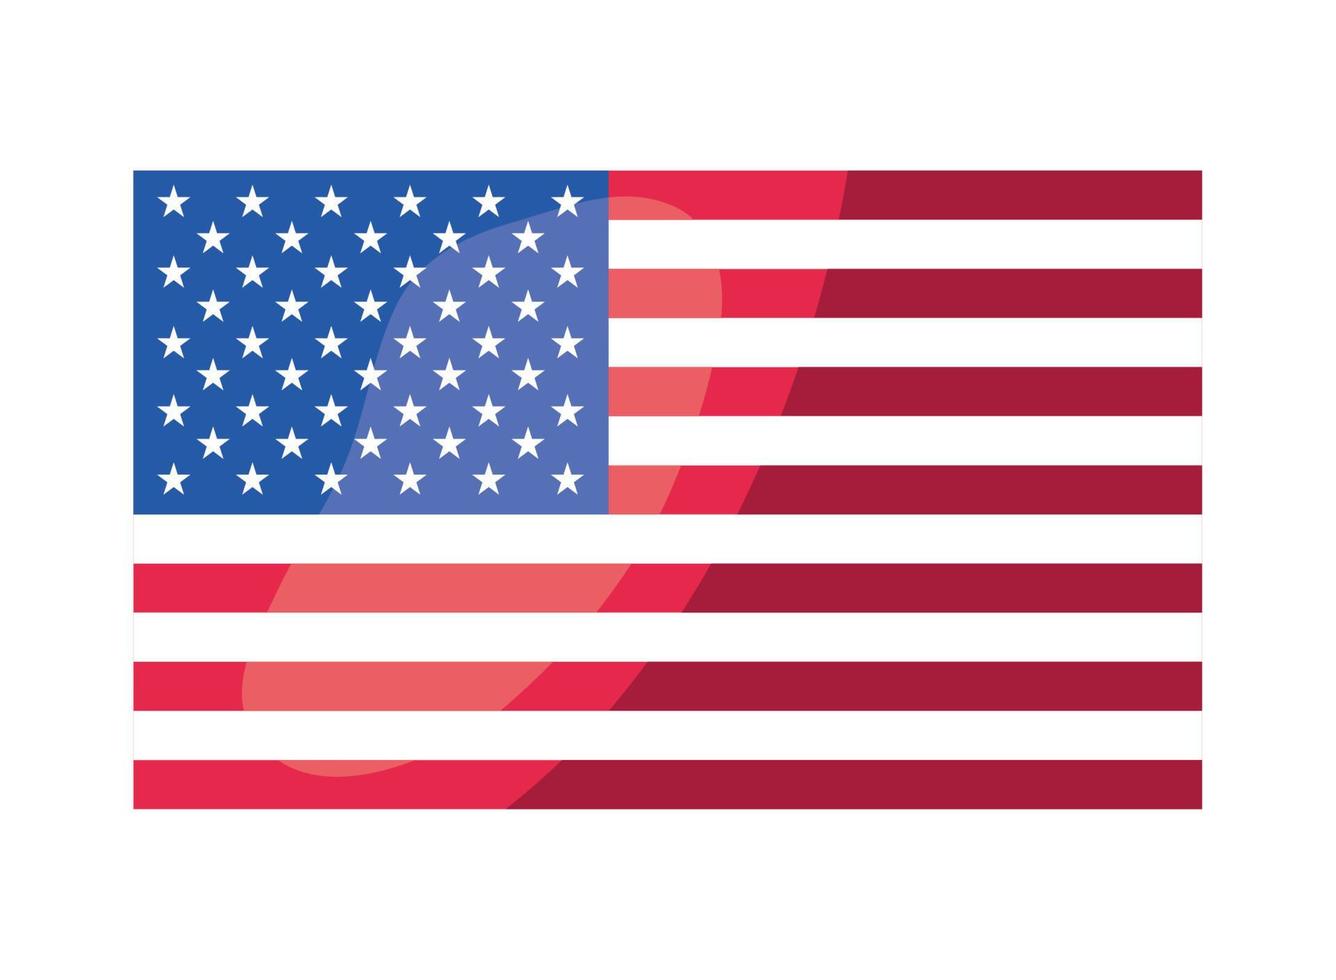 bandera de estados unidos de américa vector